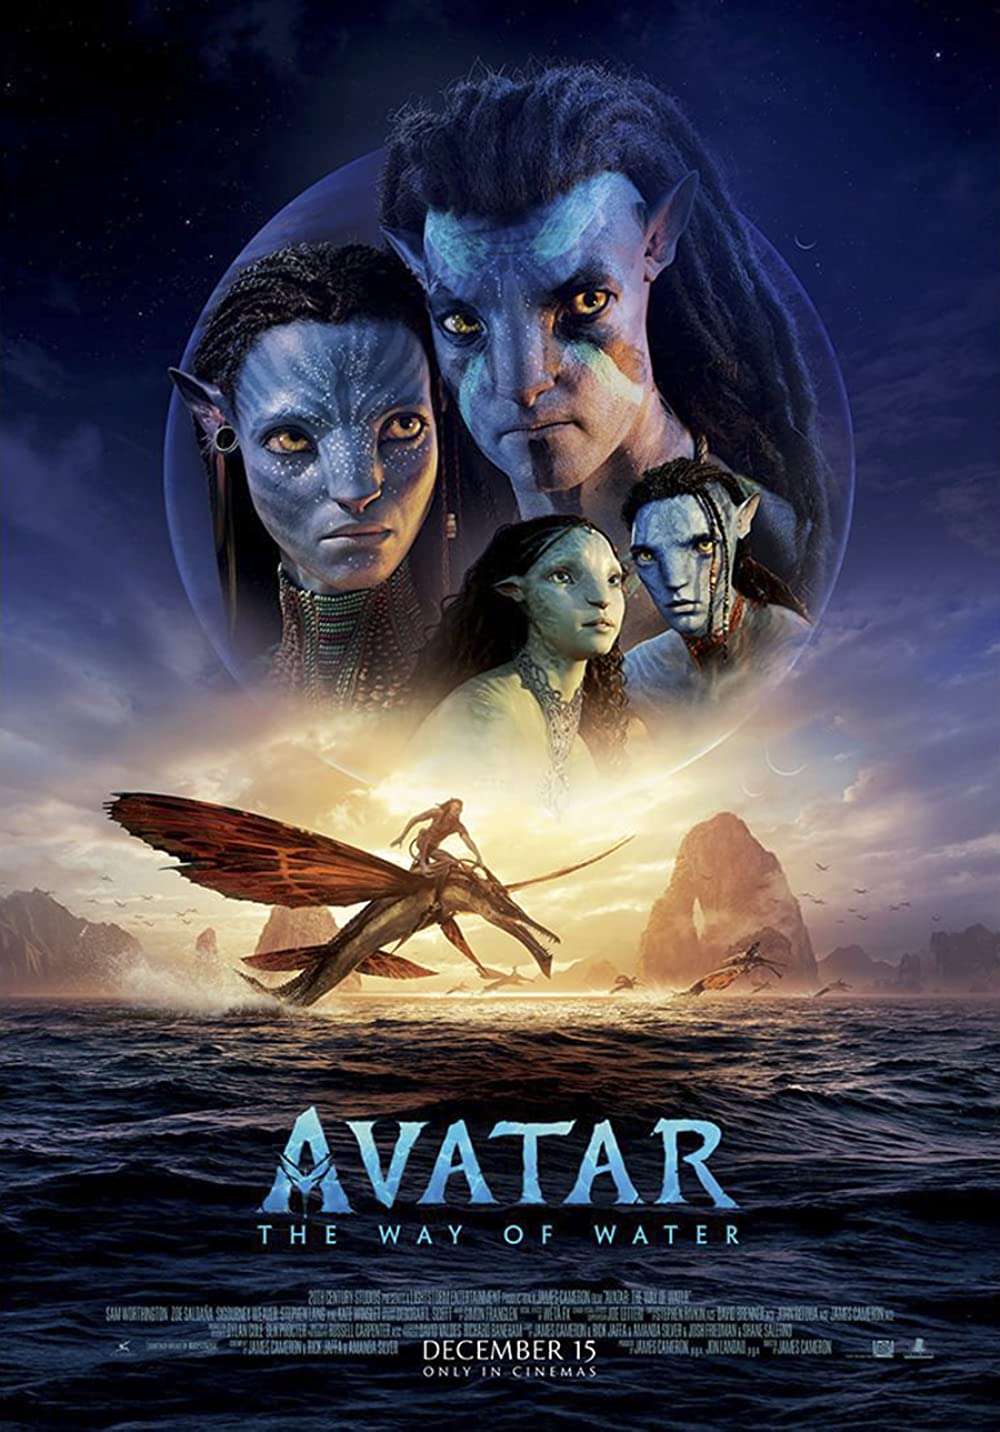 Sự trở lại của Avatar 2 đang gây xôn xao trong làng điện ảnh thế giới. Bộ phim đình đám này hứa hẹn sẽ mang đến những khung cảnh đẹp như mơ và kỹ xảo hoành tráng hơn bao giờ hết. Cách kể câu chuyện đầy cảm xúc của đạo diễn tài ba James Cameron sẽ khiến bạn đắm chìm trong thế giới hư cấu của Pandora. Đón xem Avatar 2 và làm mới trái tim bằng những trải nghiệm đầy kỳ ảo.